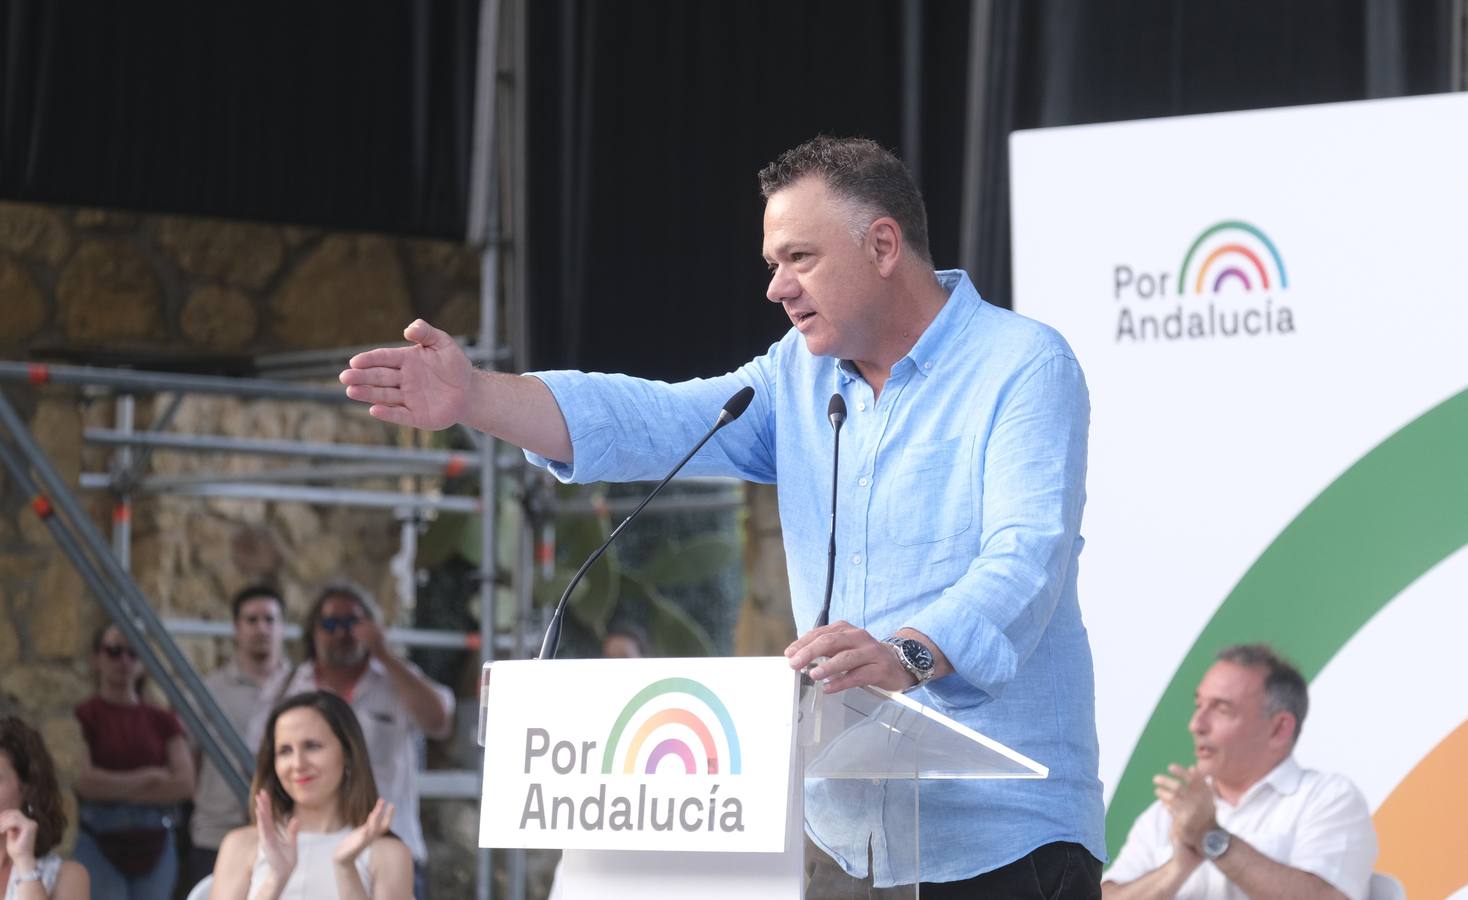 El acto de Por Andalucía con Yolanda Díaz en Córdoba, en imágenes